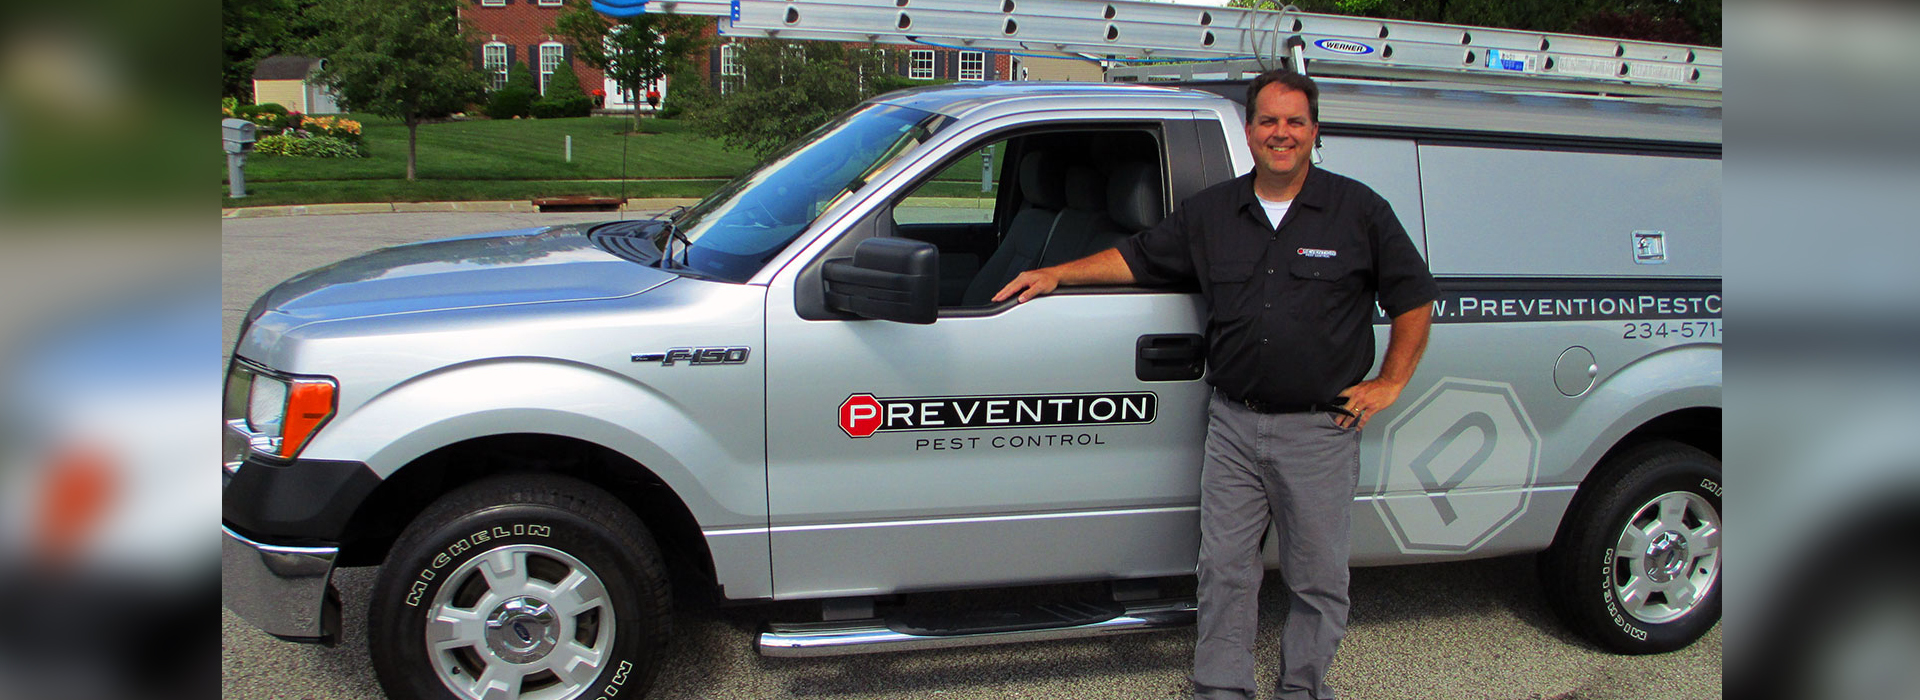 Prevention Pest Control, Dave Novak